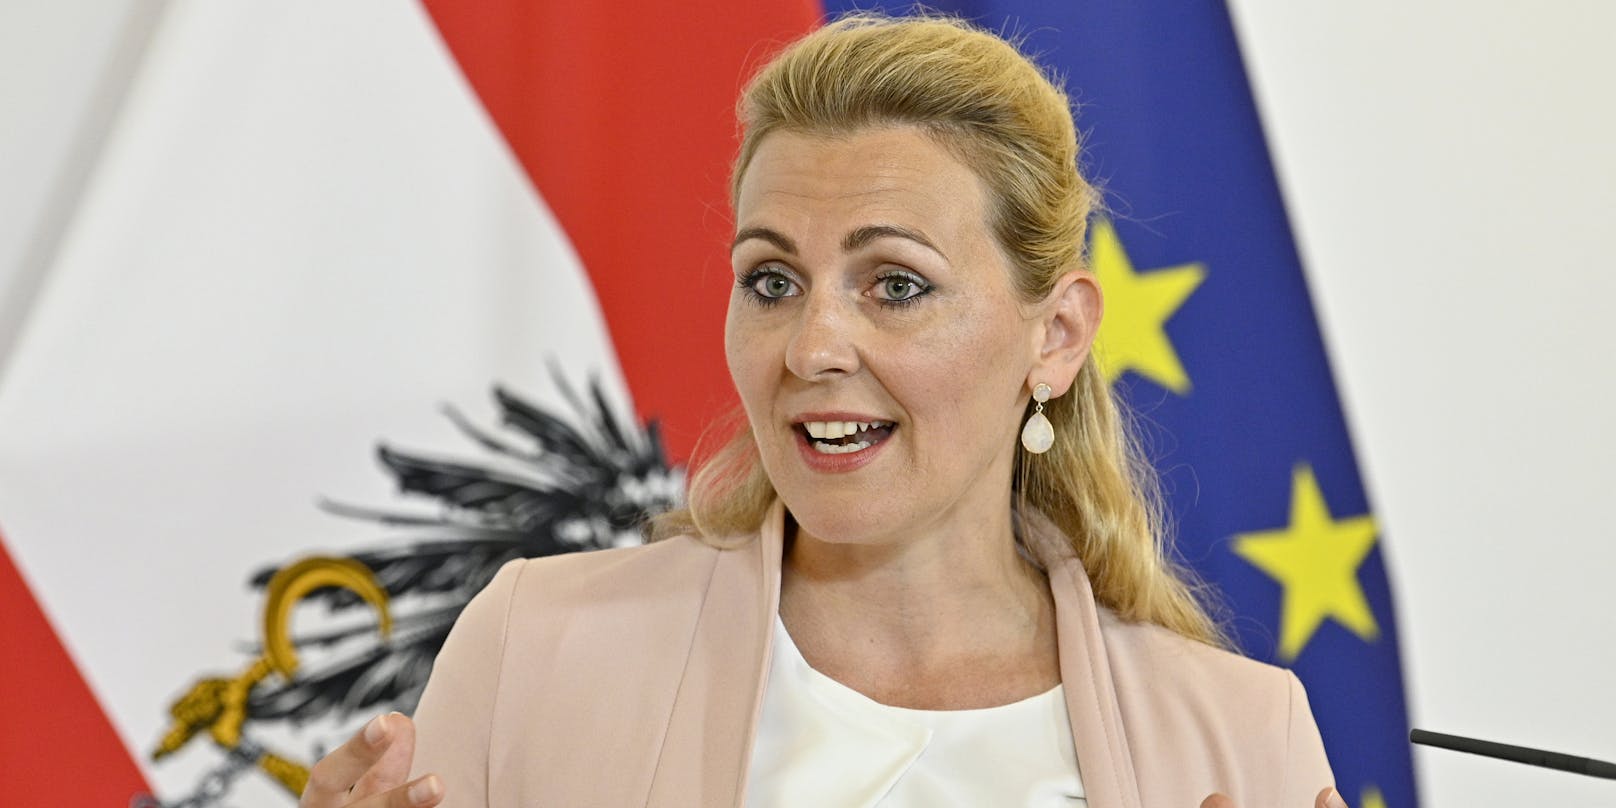 Arbeitsministerin Christine Aschbacher (ÖVP) bei einer Pressekonferenz am 11. August 2020